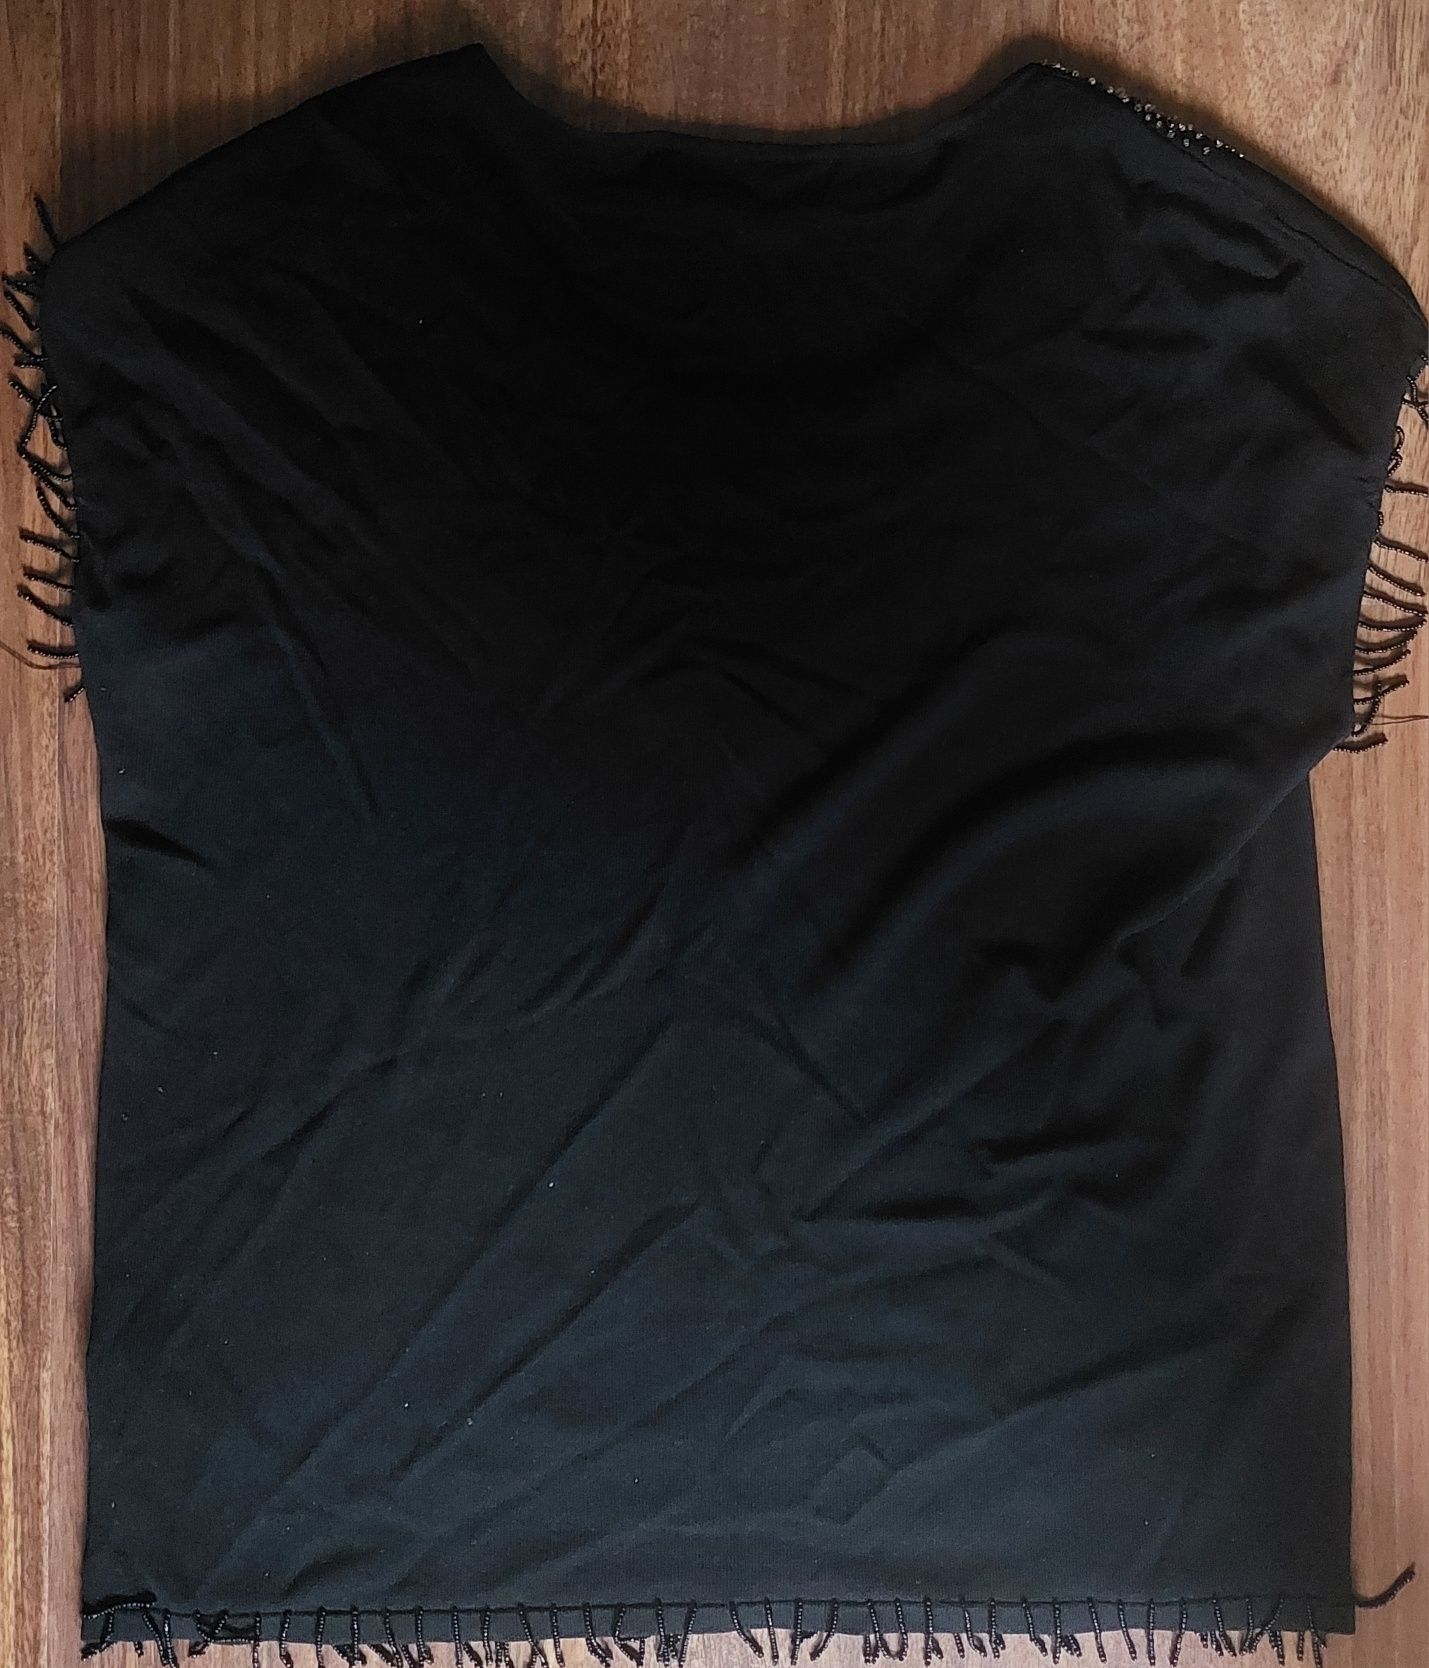 Damska czarna bluzka bez rękawów z dekoltem ozdobionym cekinami